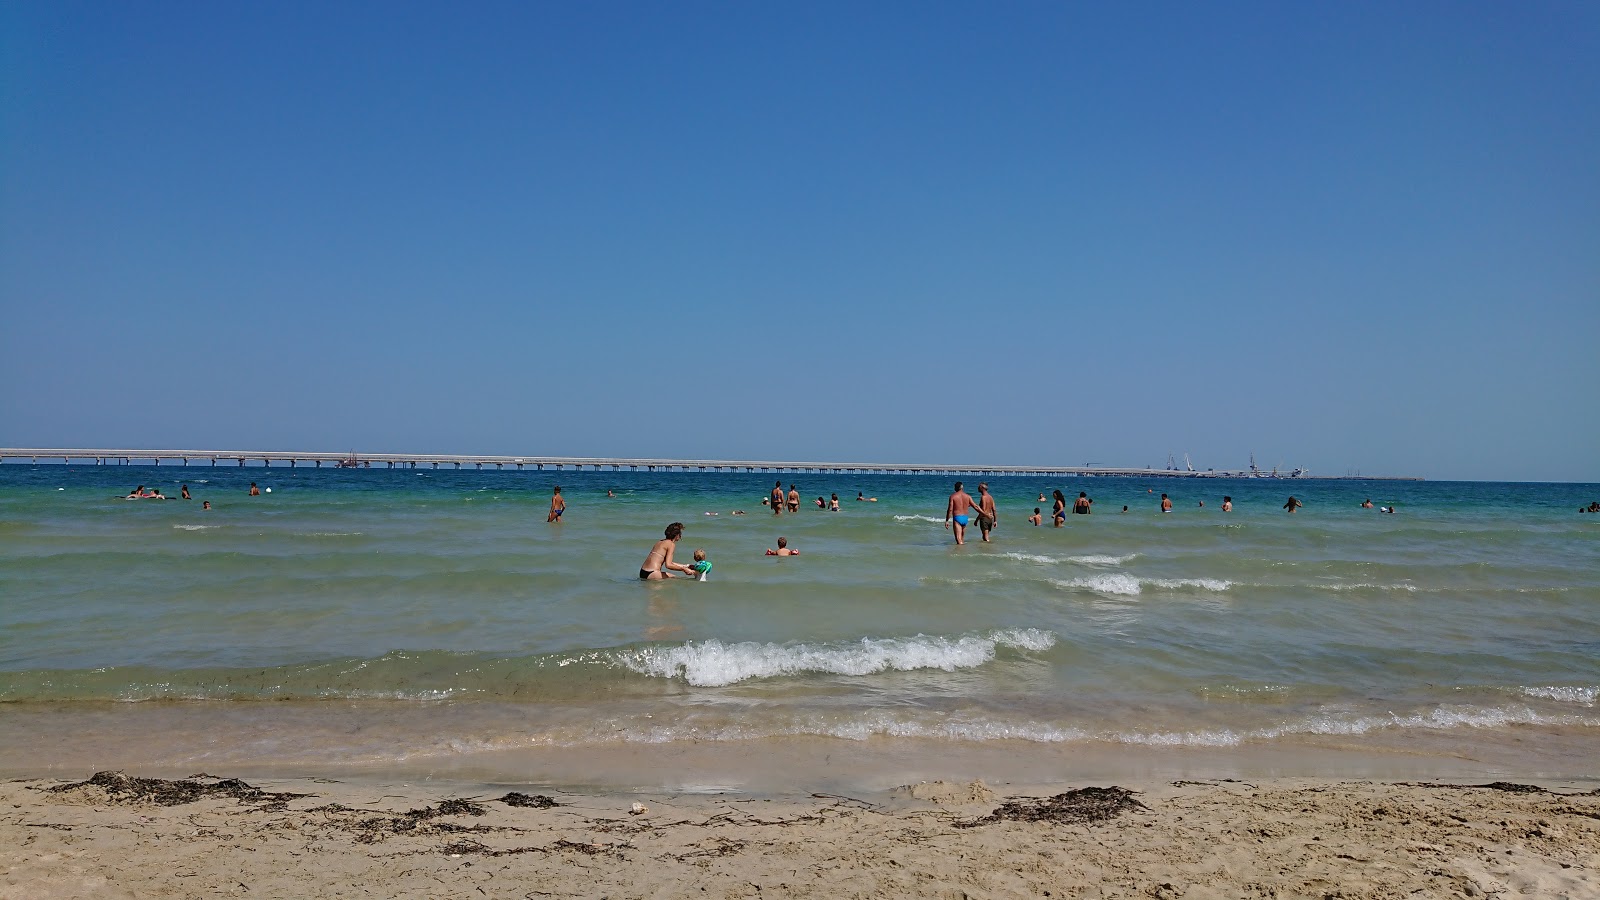 Foto de Spiaggia Libera con muy limpio nivel de limpieza